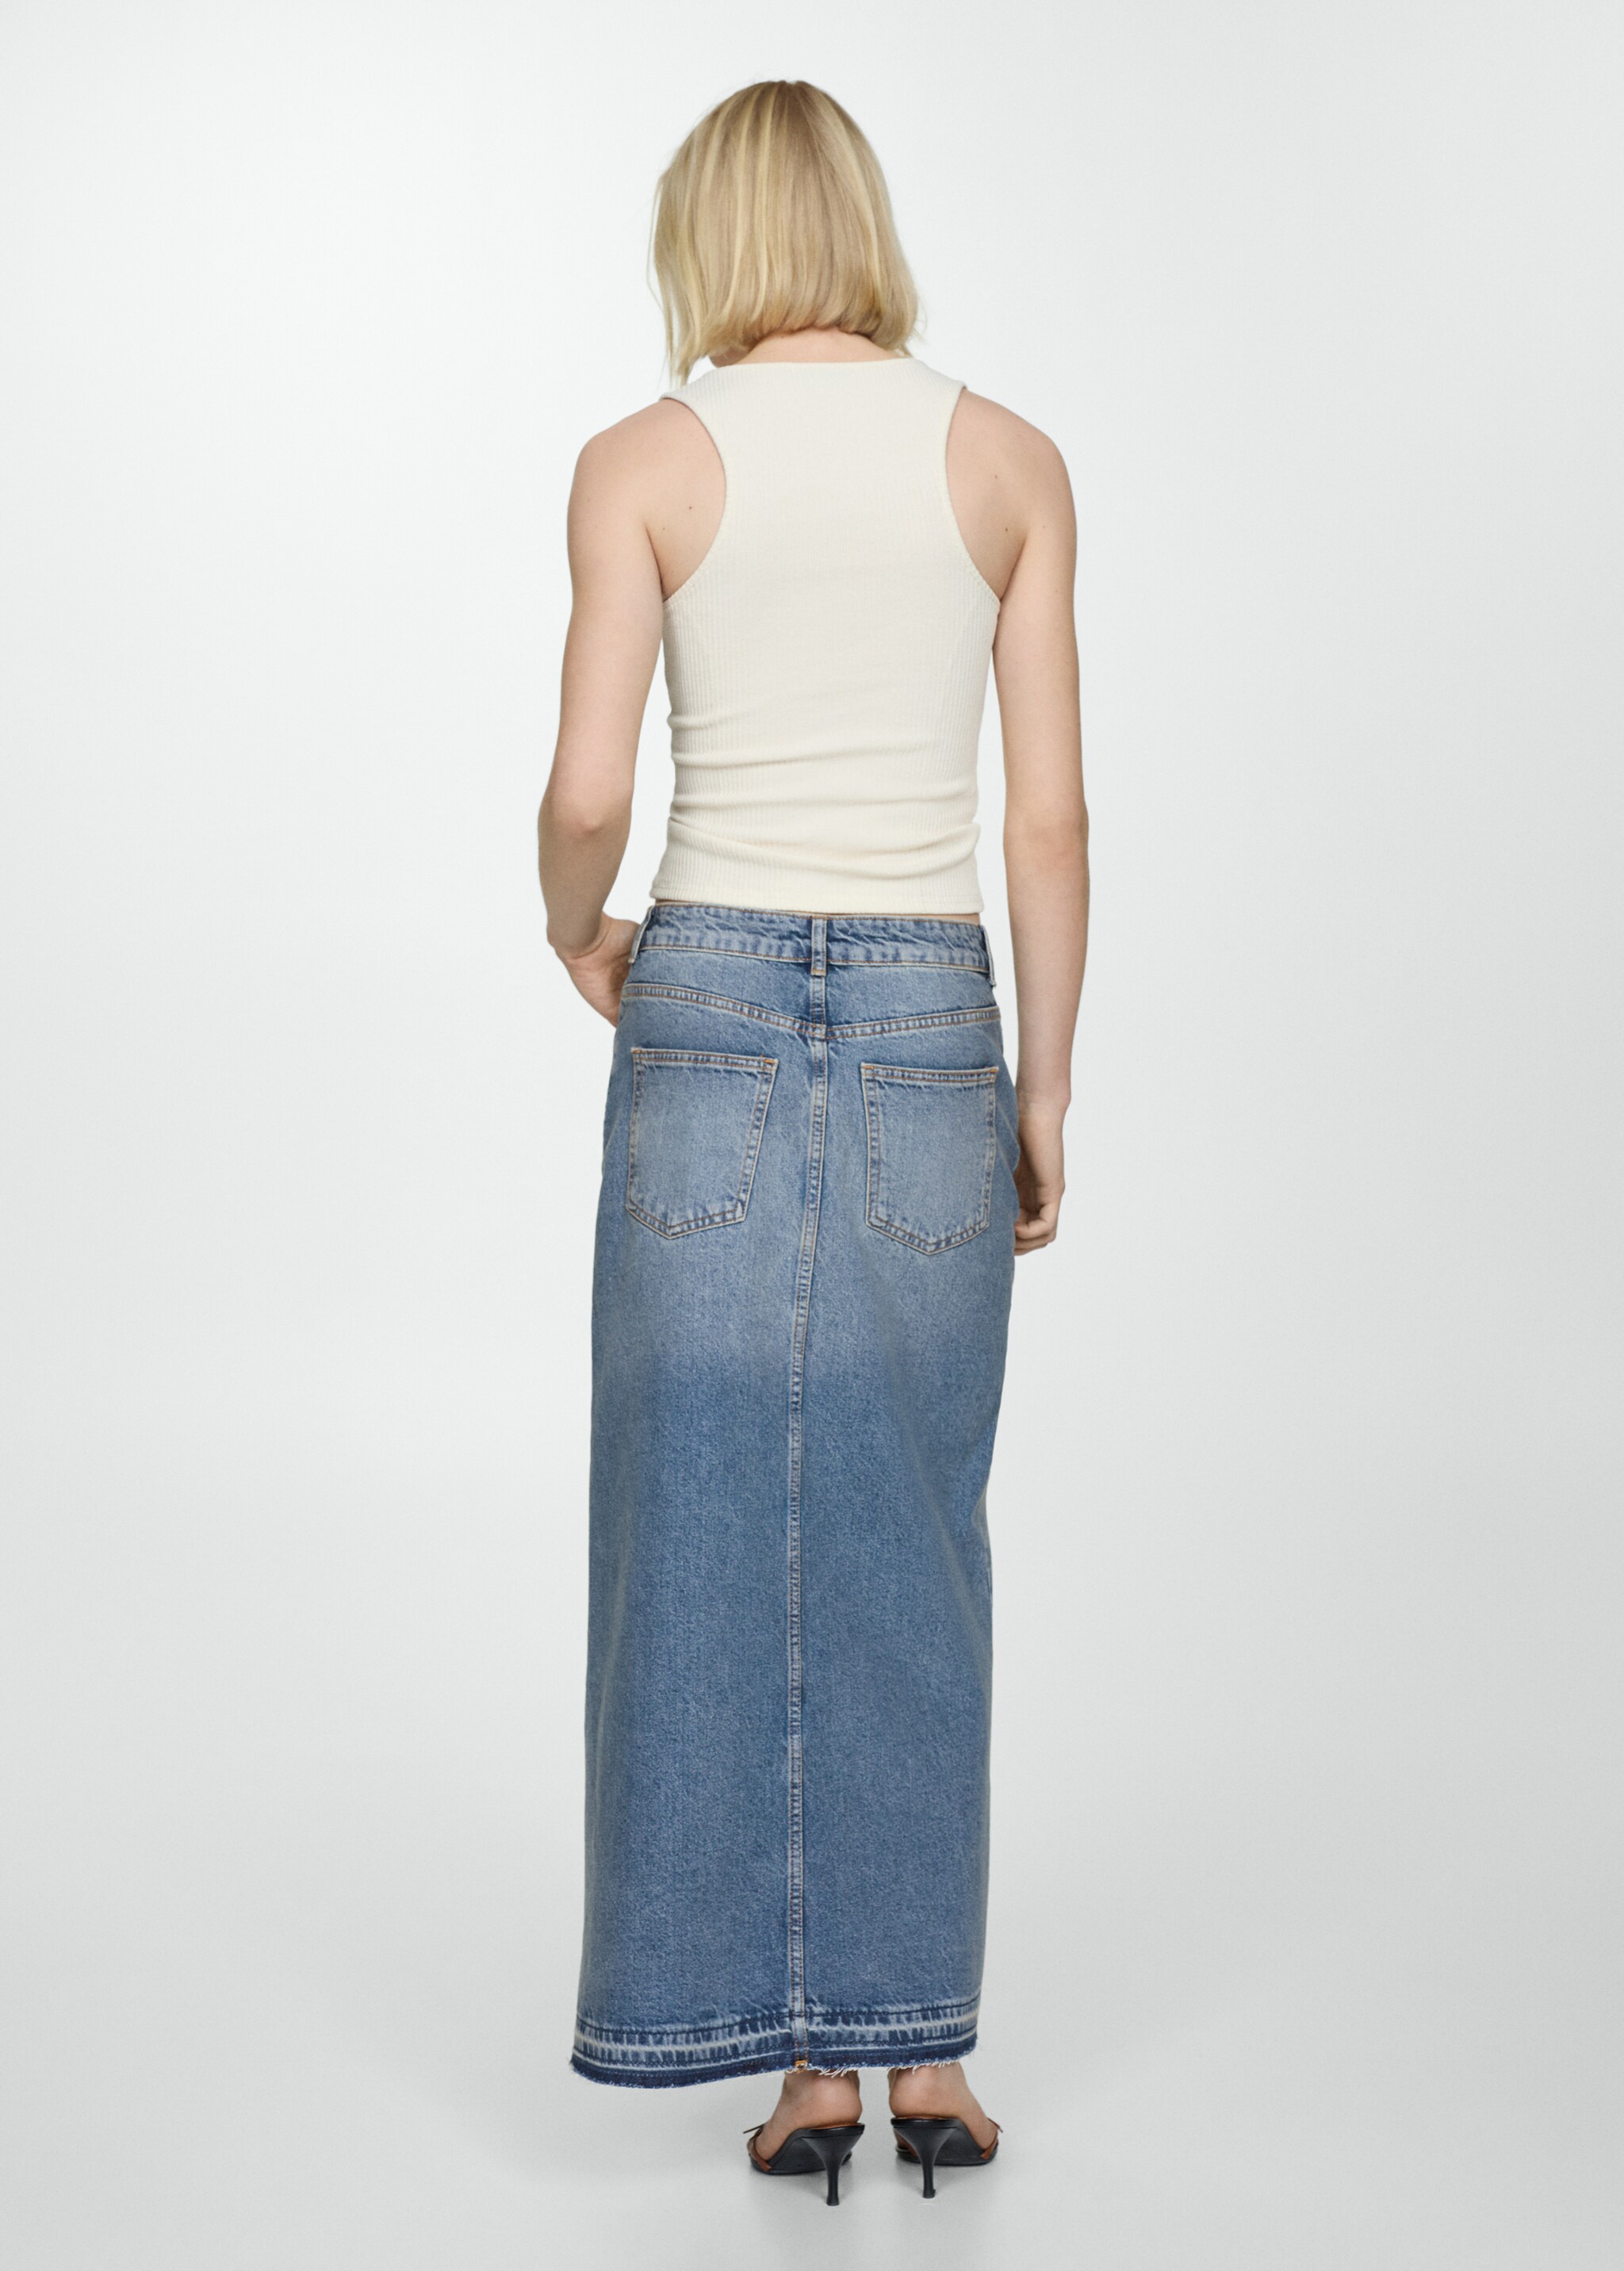 Asymmetrical denim skirt - Reverse of the article